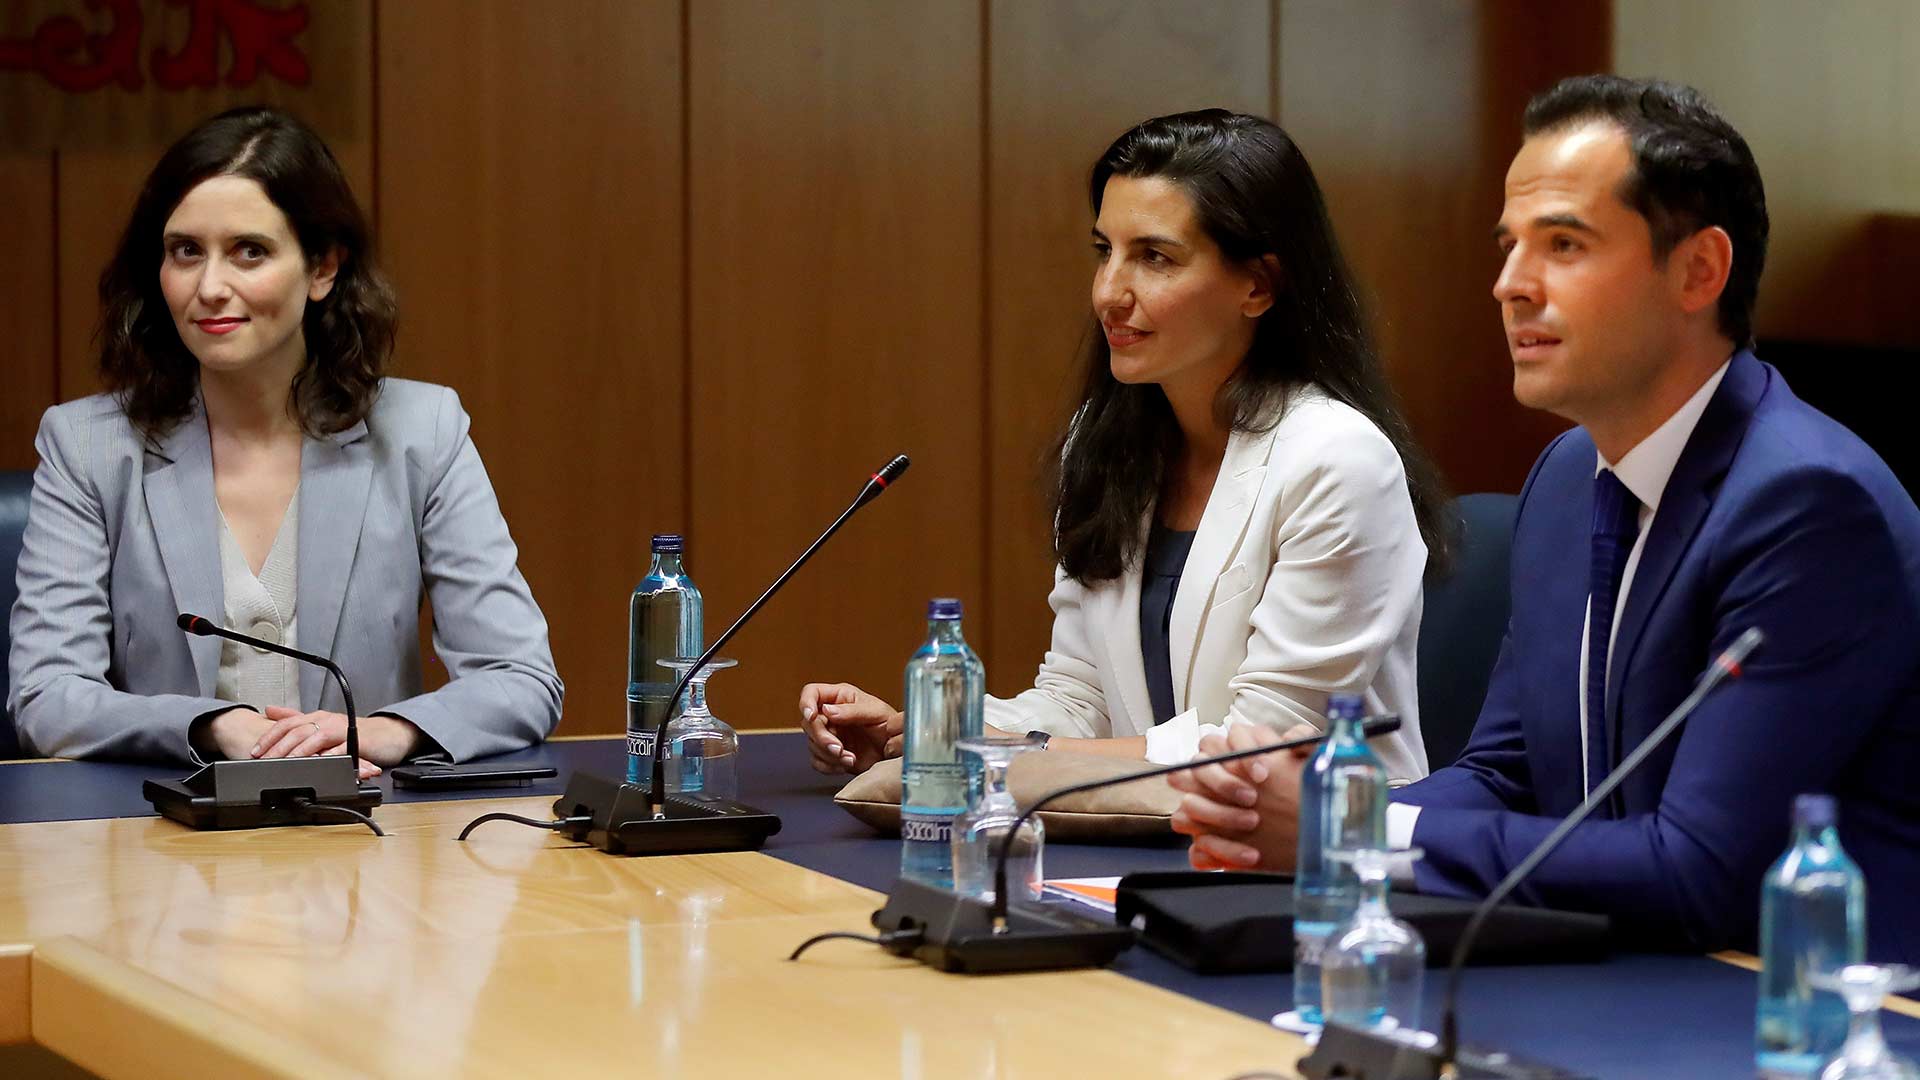 La primera reunión entre el PP, Cs y Vox fracasa y provoca una investidura sin candidato en Madrid